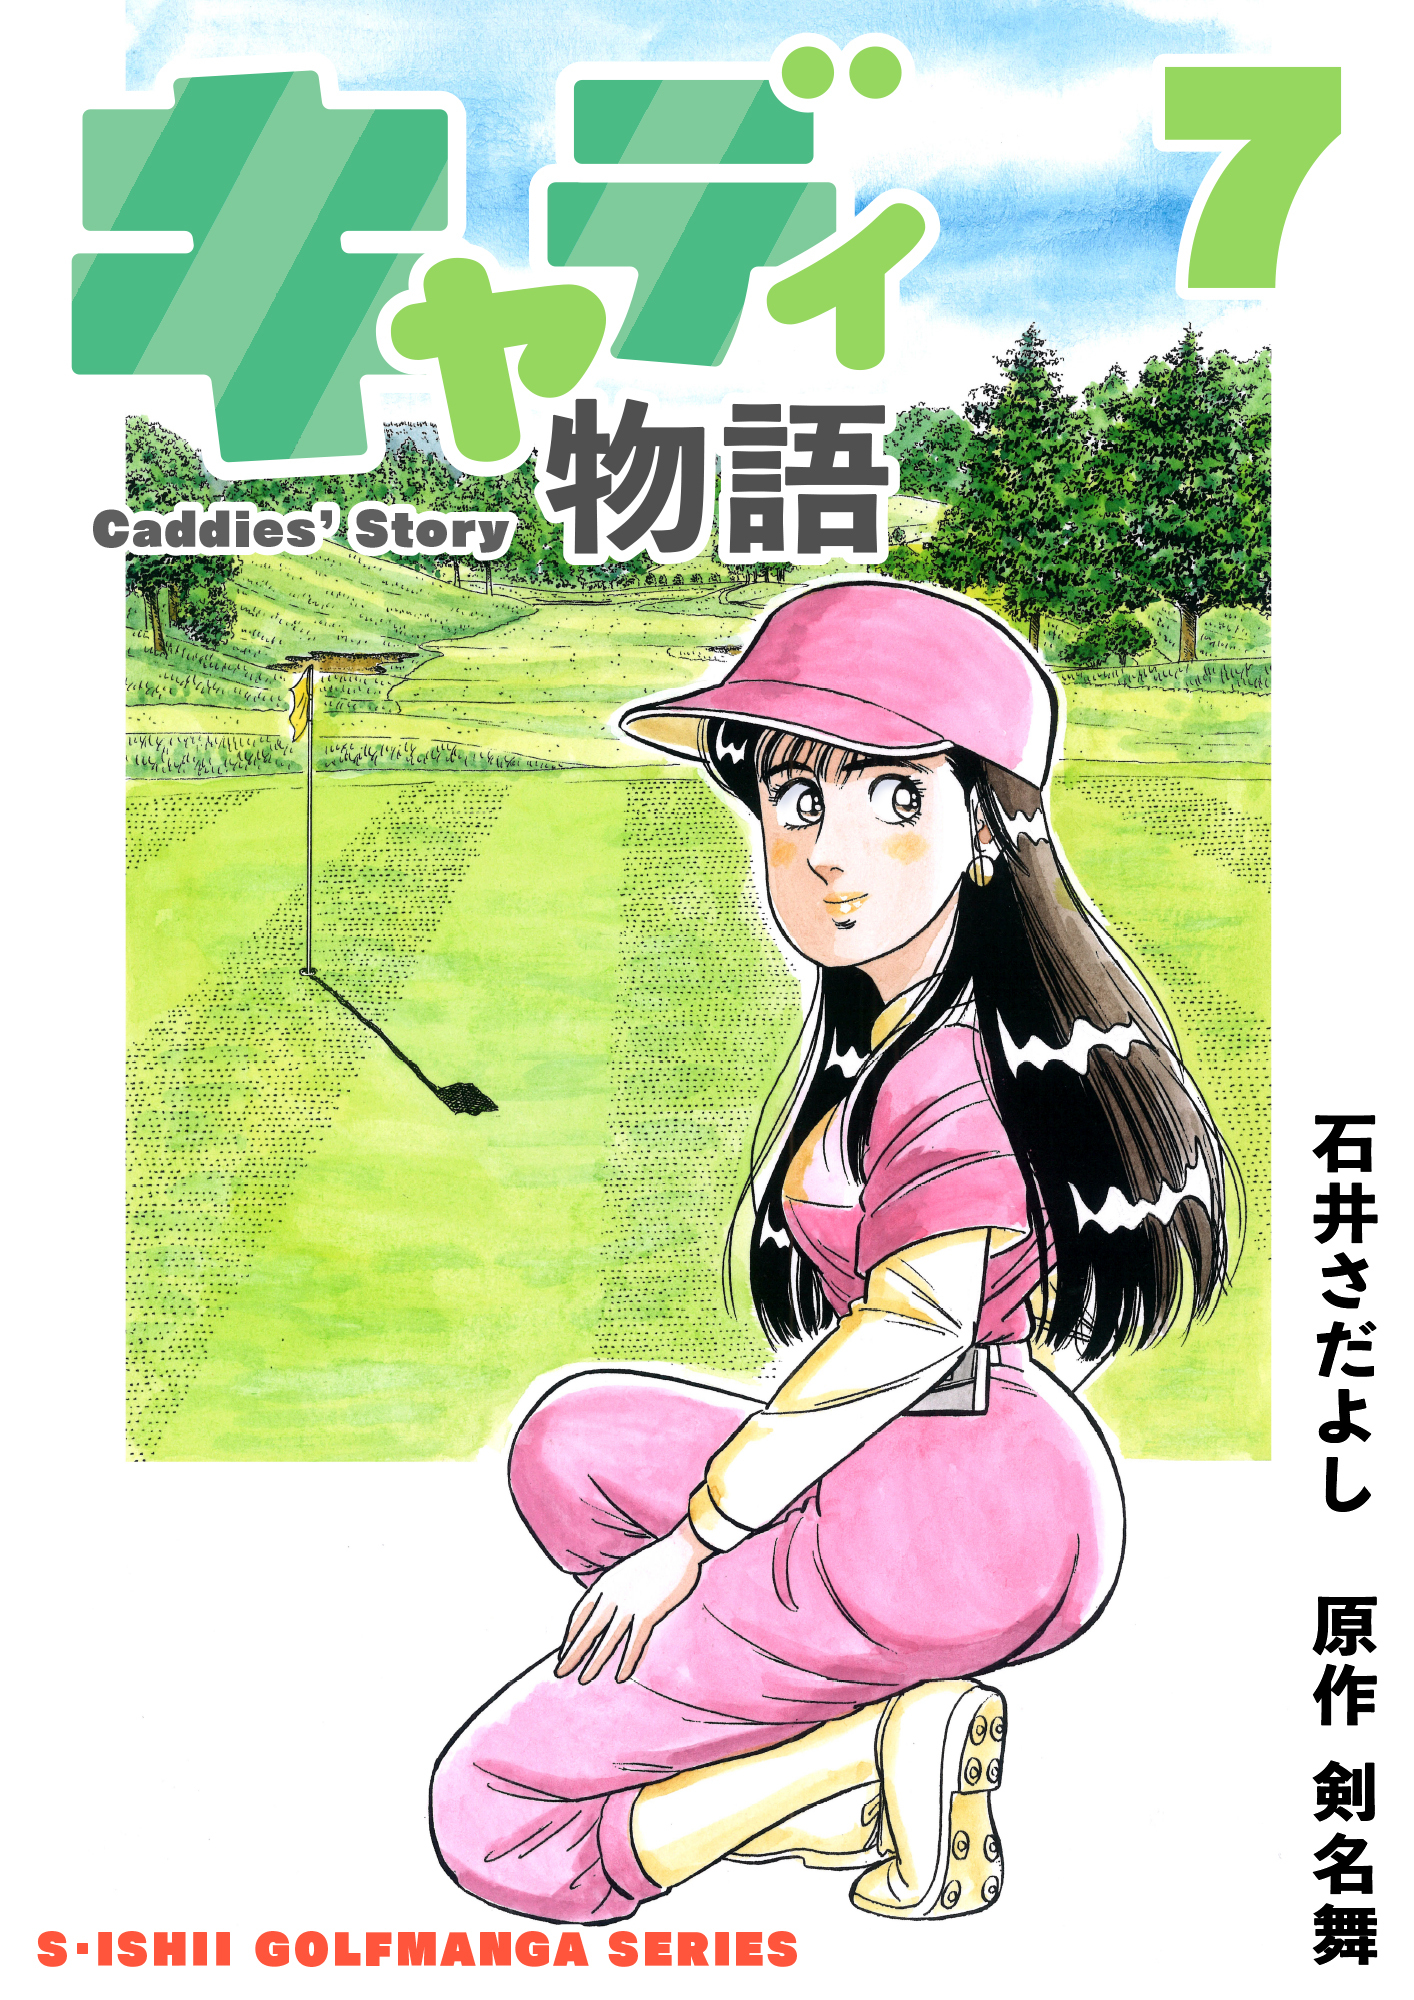 石井さだよしゴルフ漫画シリーズ キャディ物語 7巻 無料 試し読みなら Amebaマンガ 旧 読書のお時間です